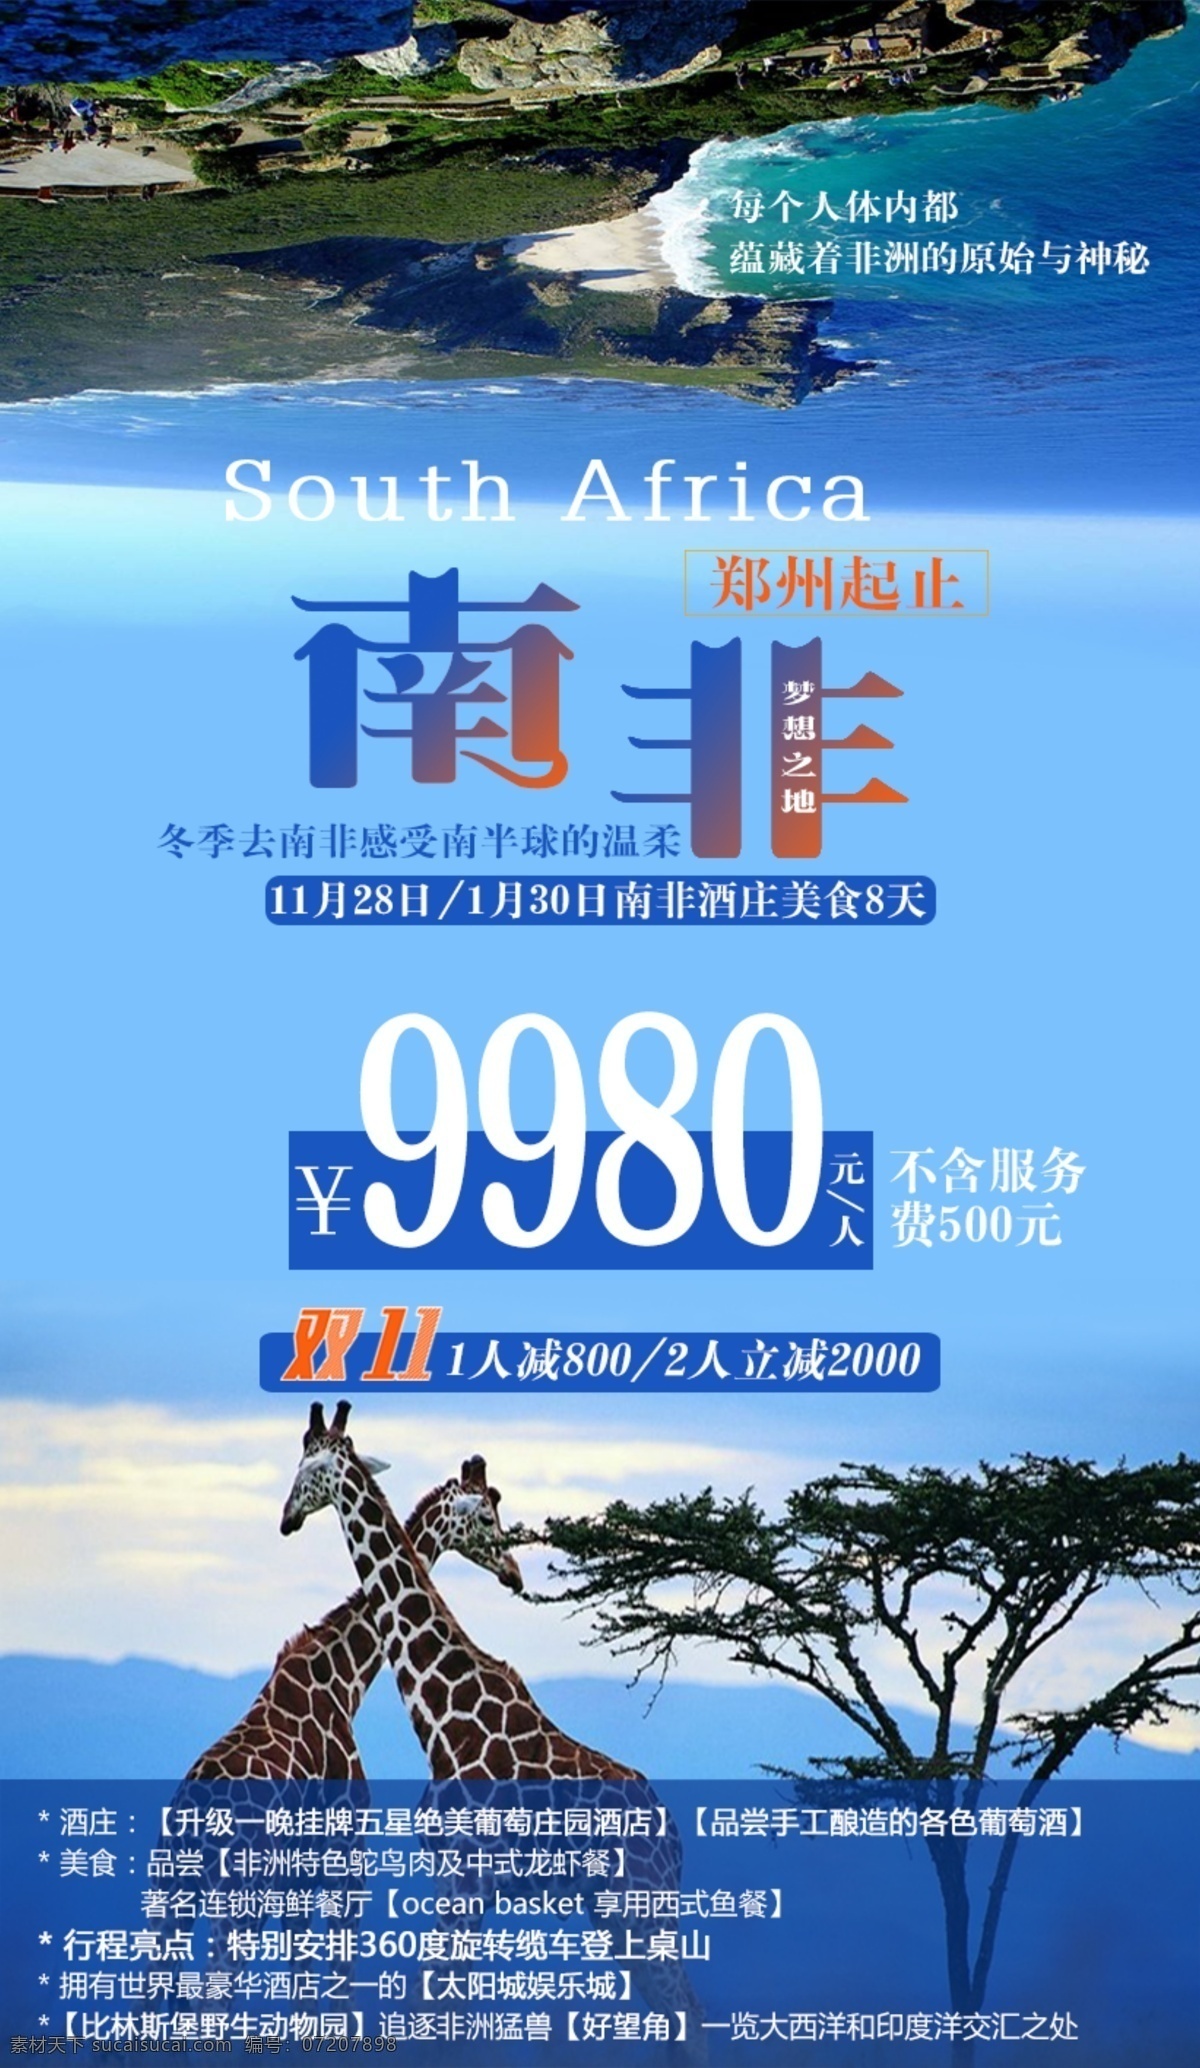 创意 风景 长颈鹿 南非 旅游 海报 开普敦 桌山保护区 美食 酒庄 比林 斯堡 野生 动物园